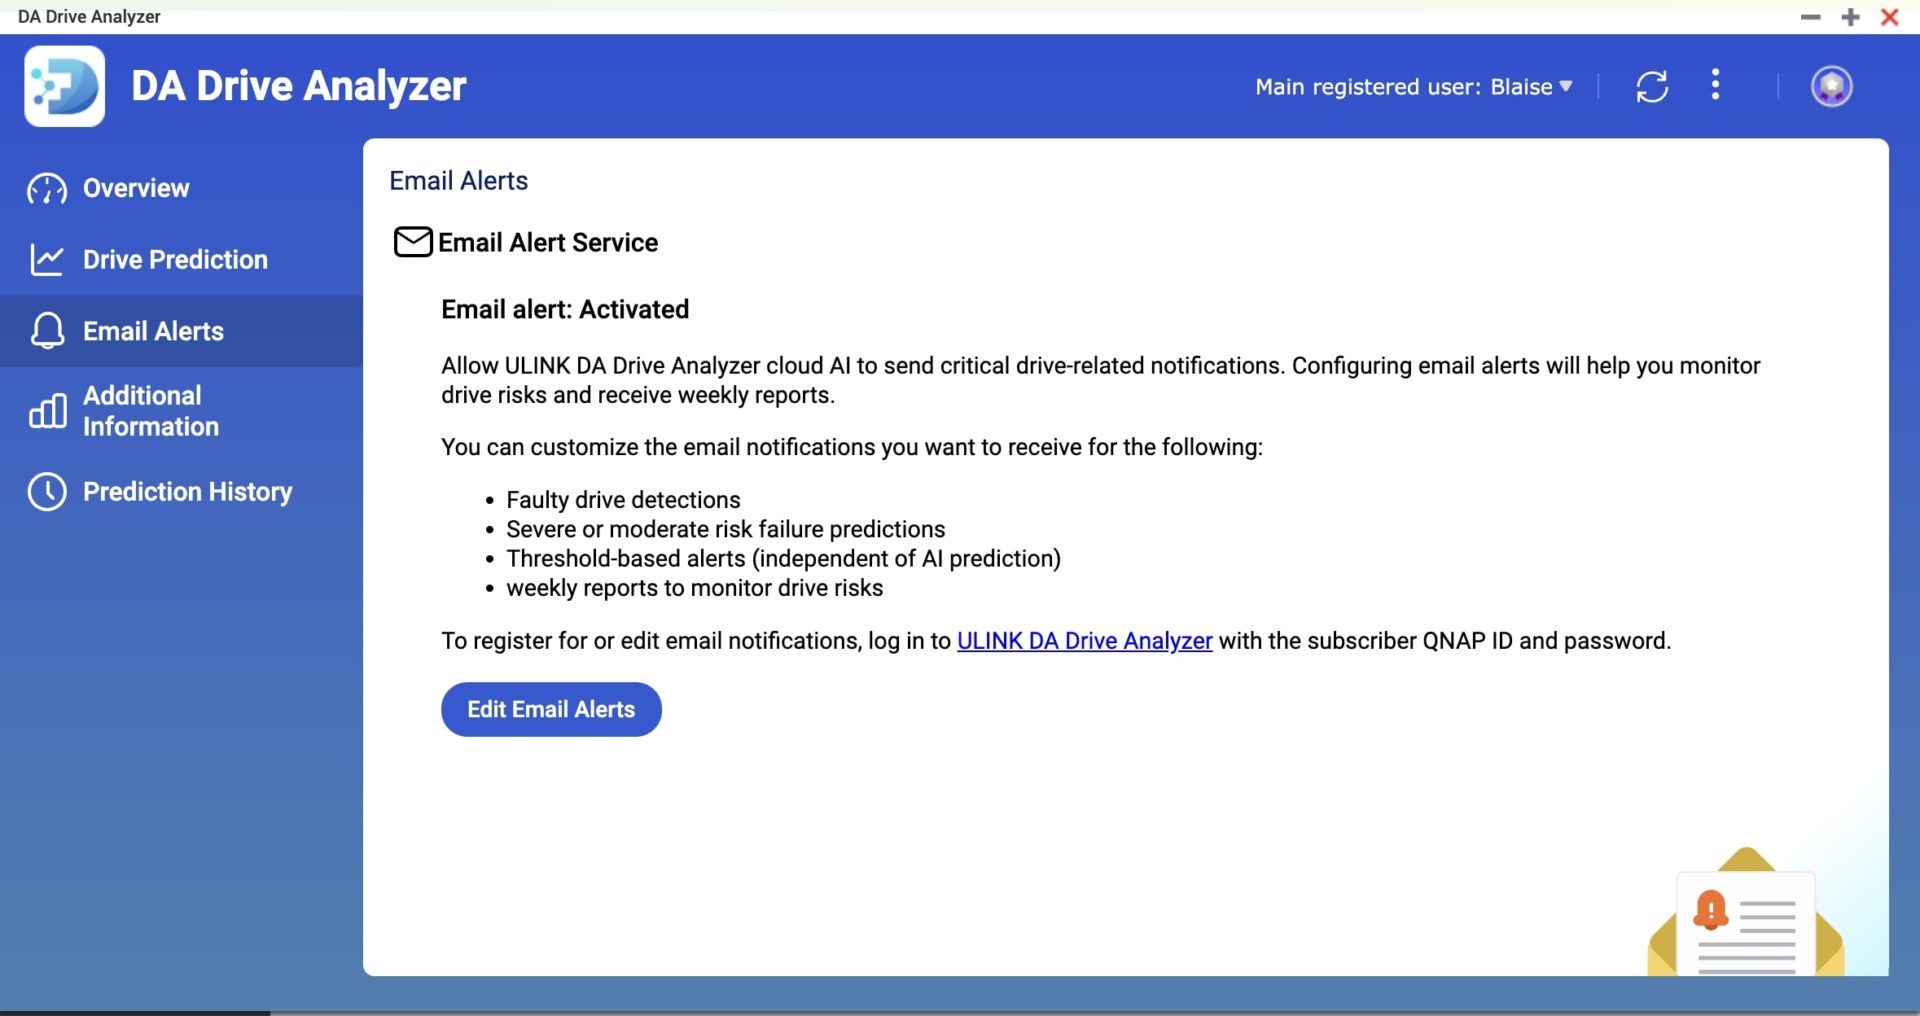 DA Drive Analyzer email alerts